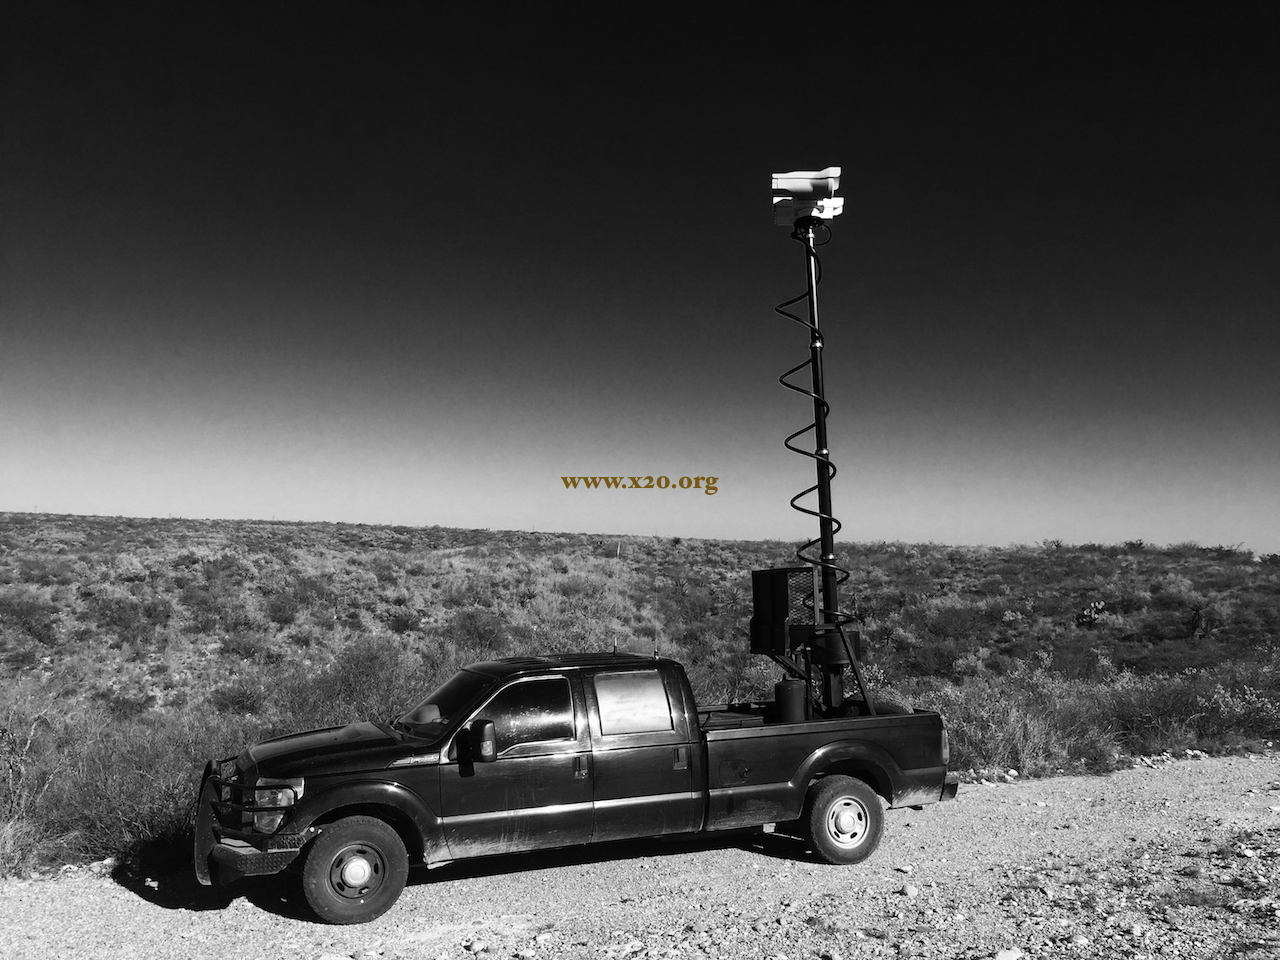 long range ptz mobile vehicle thermal imaging FLIR camera